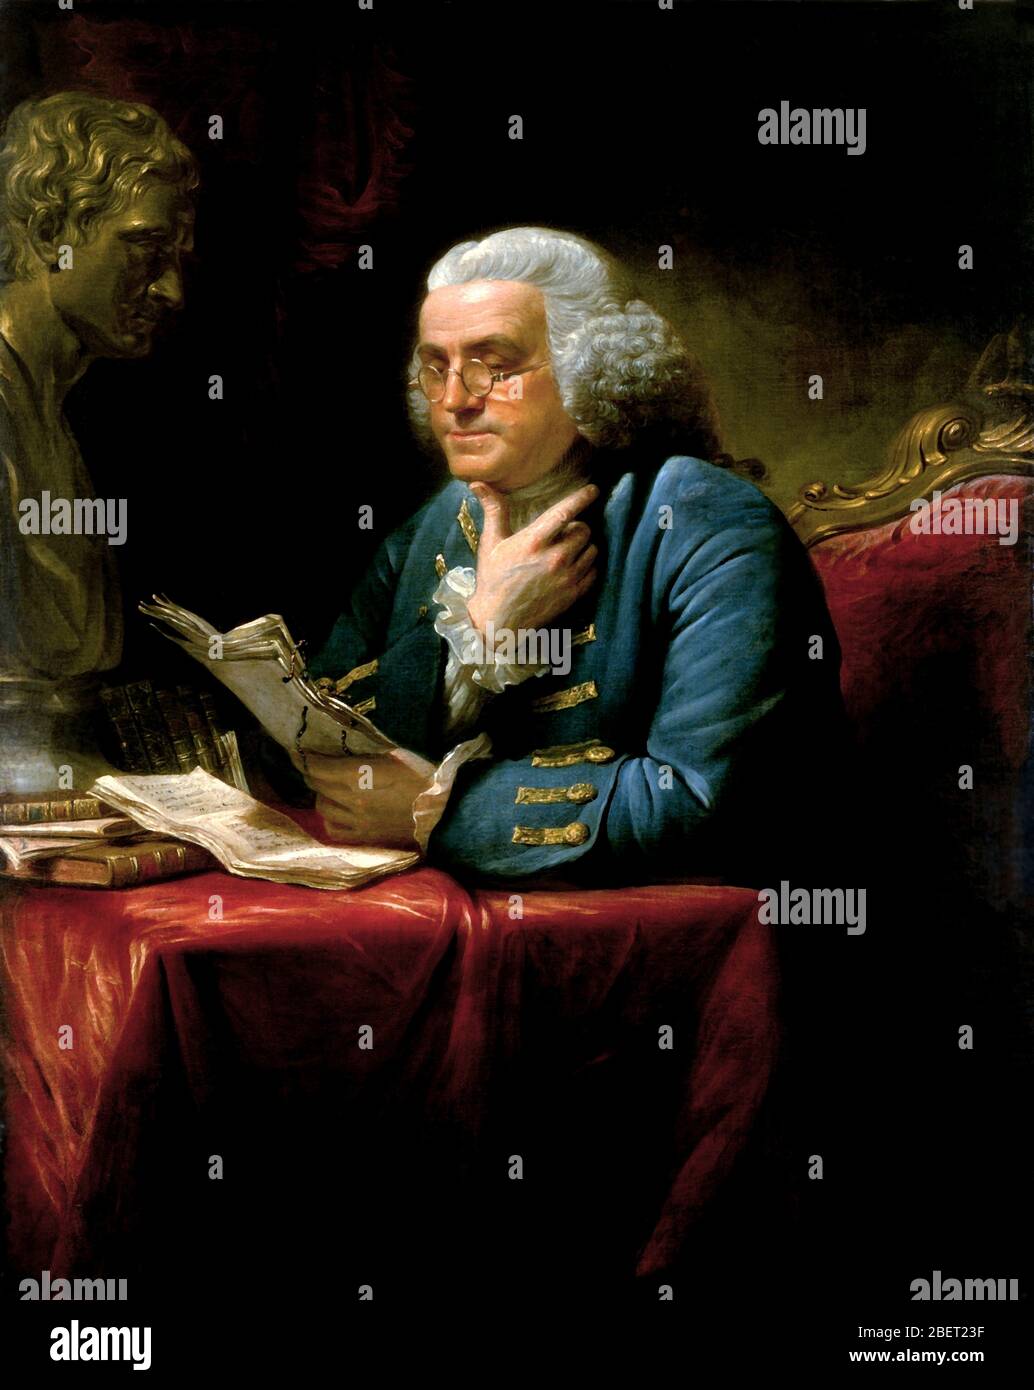 Vintage-Gemälde von Benjamin Franklin, einem der Gründerväter Amerikas. Stockfoto